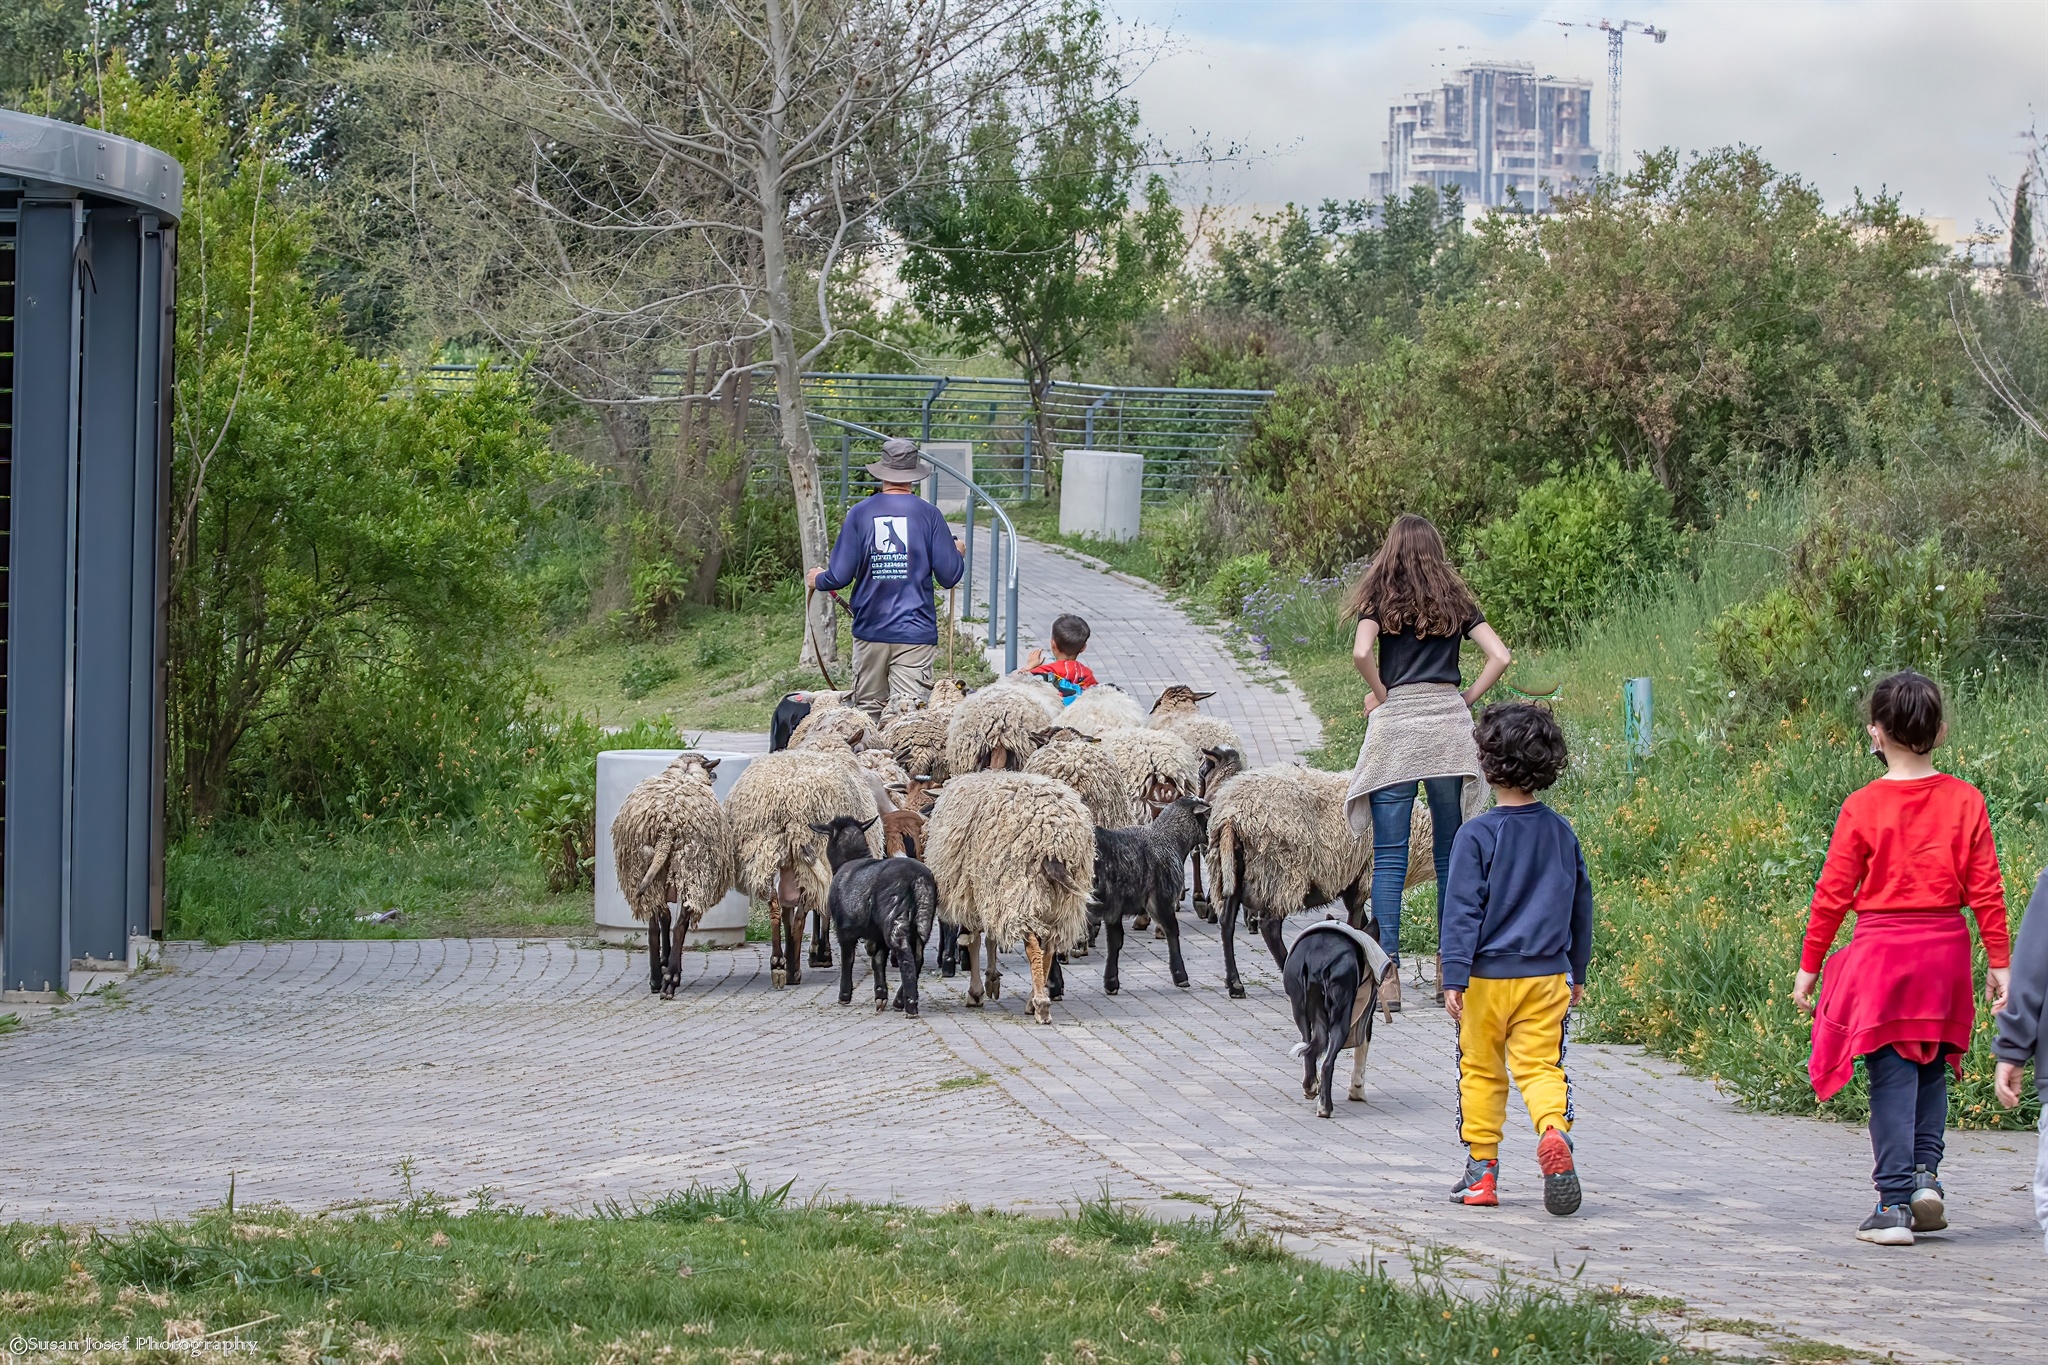 עדר הכבשים על רקע הפארק